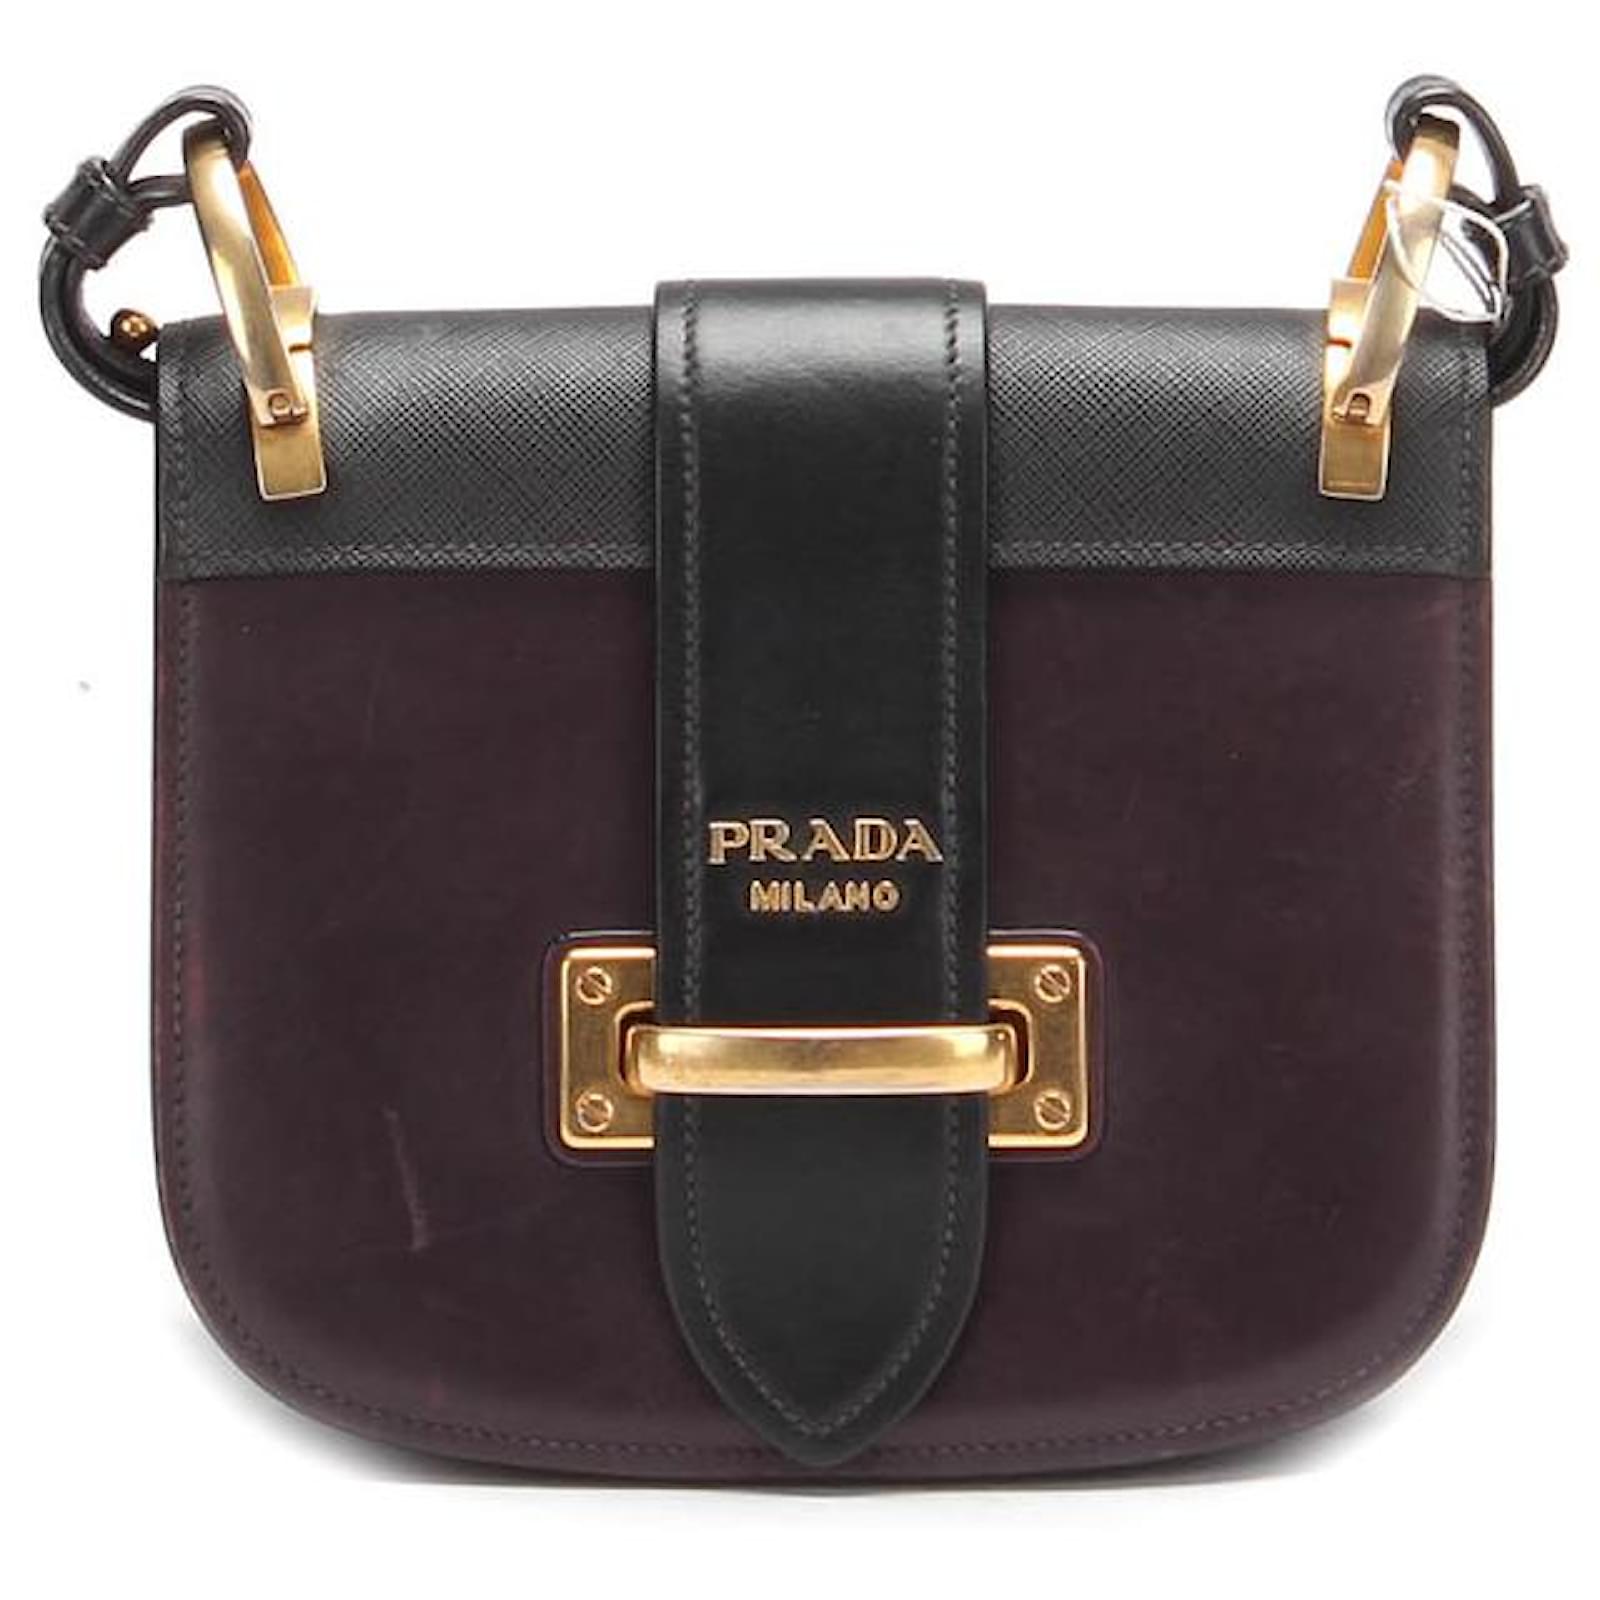 Prada Cahier Leather Shoulder Bag in Brown